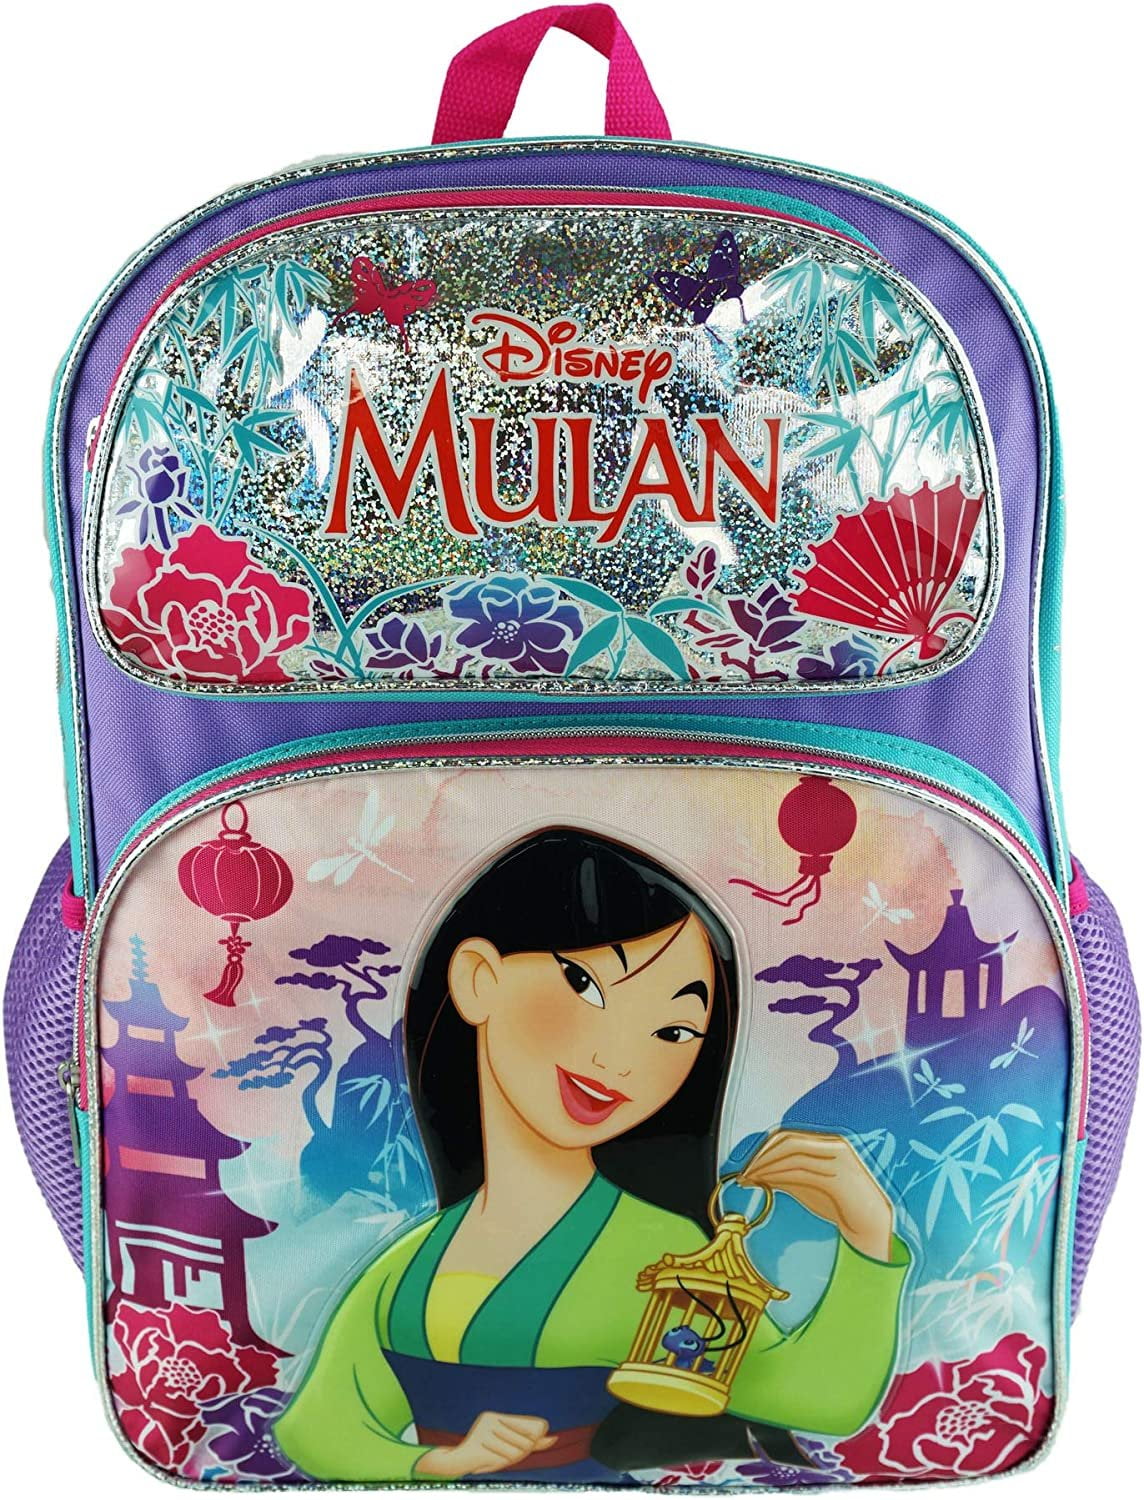 Disney Frozen 2 Elsa & Anna Kids Backpack 16 inch Rolling Backpack /Roller Large Bag 20225, Girl's, Size: Rolling 16 inch